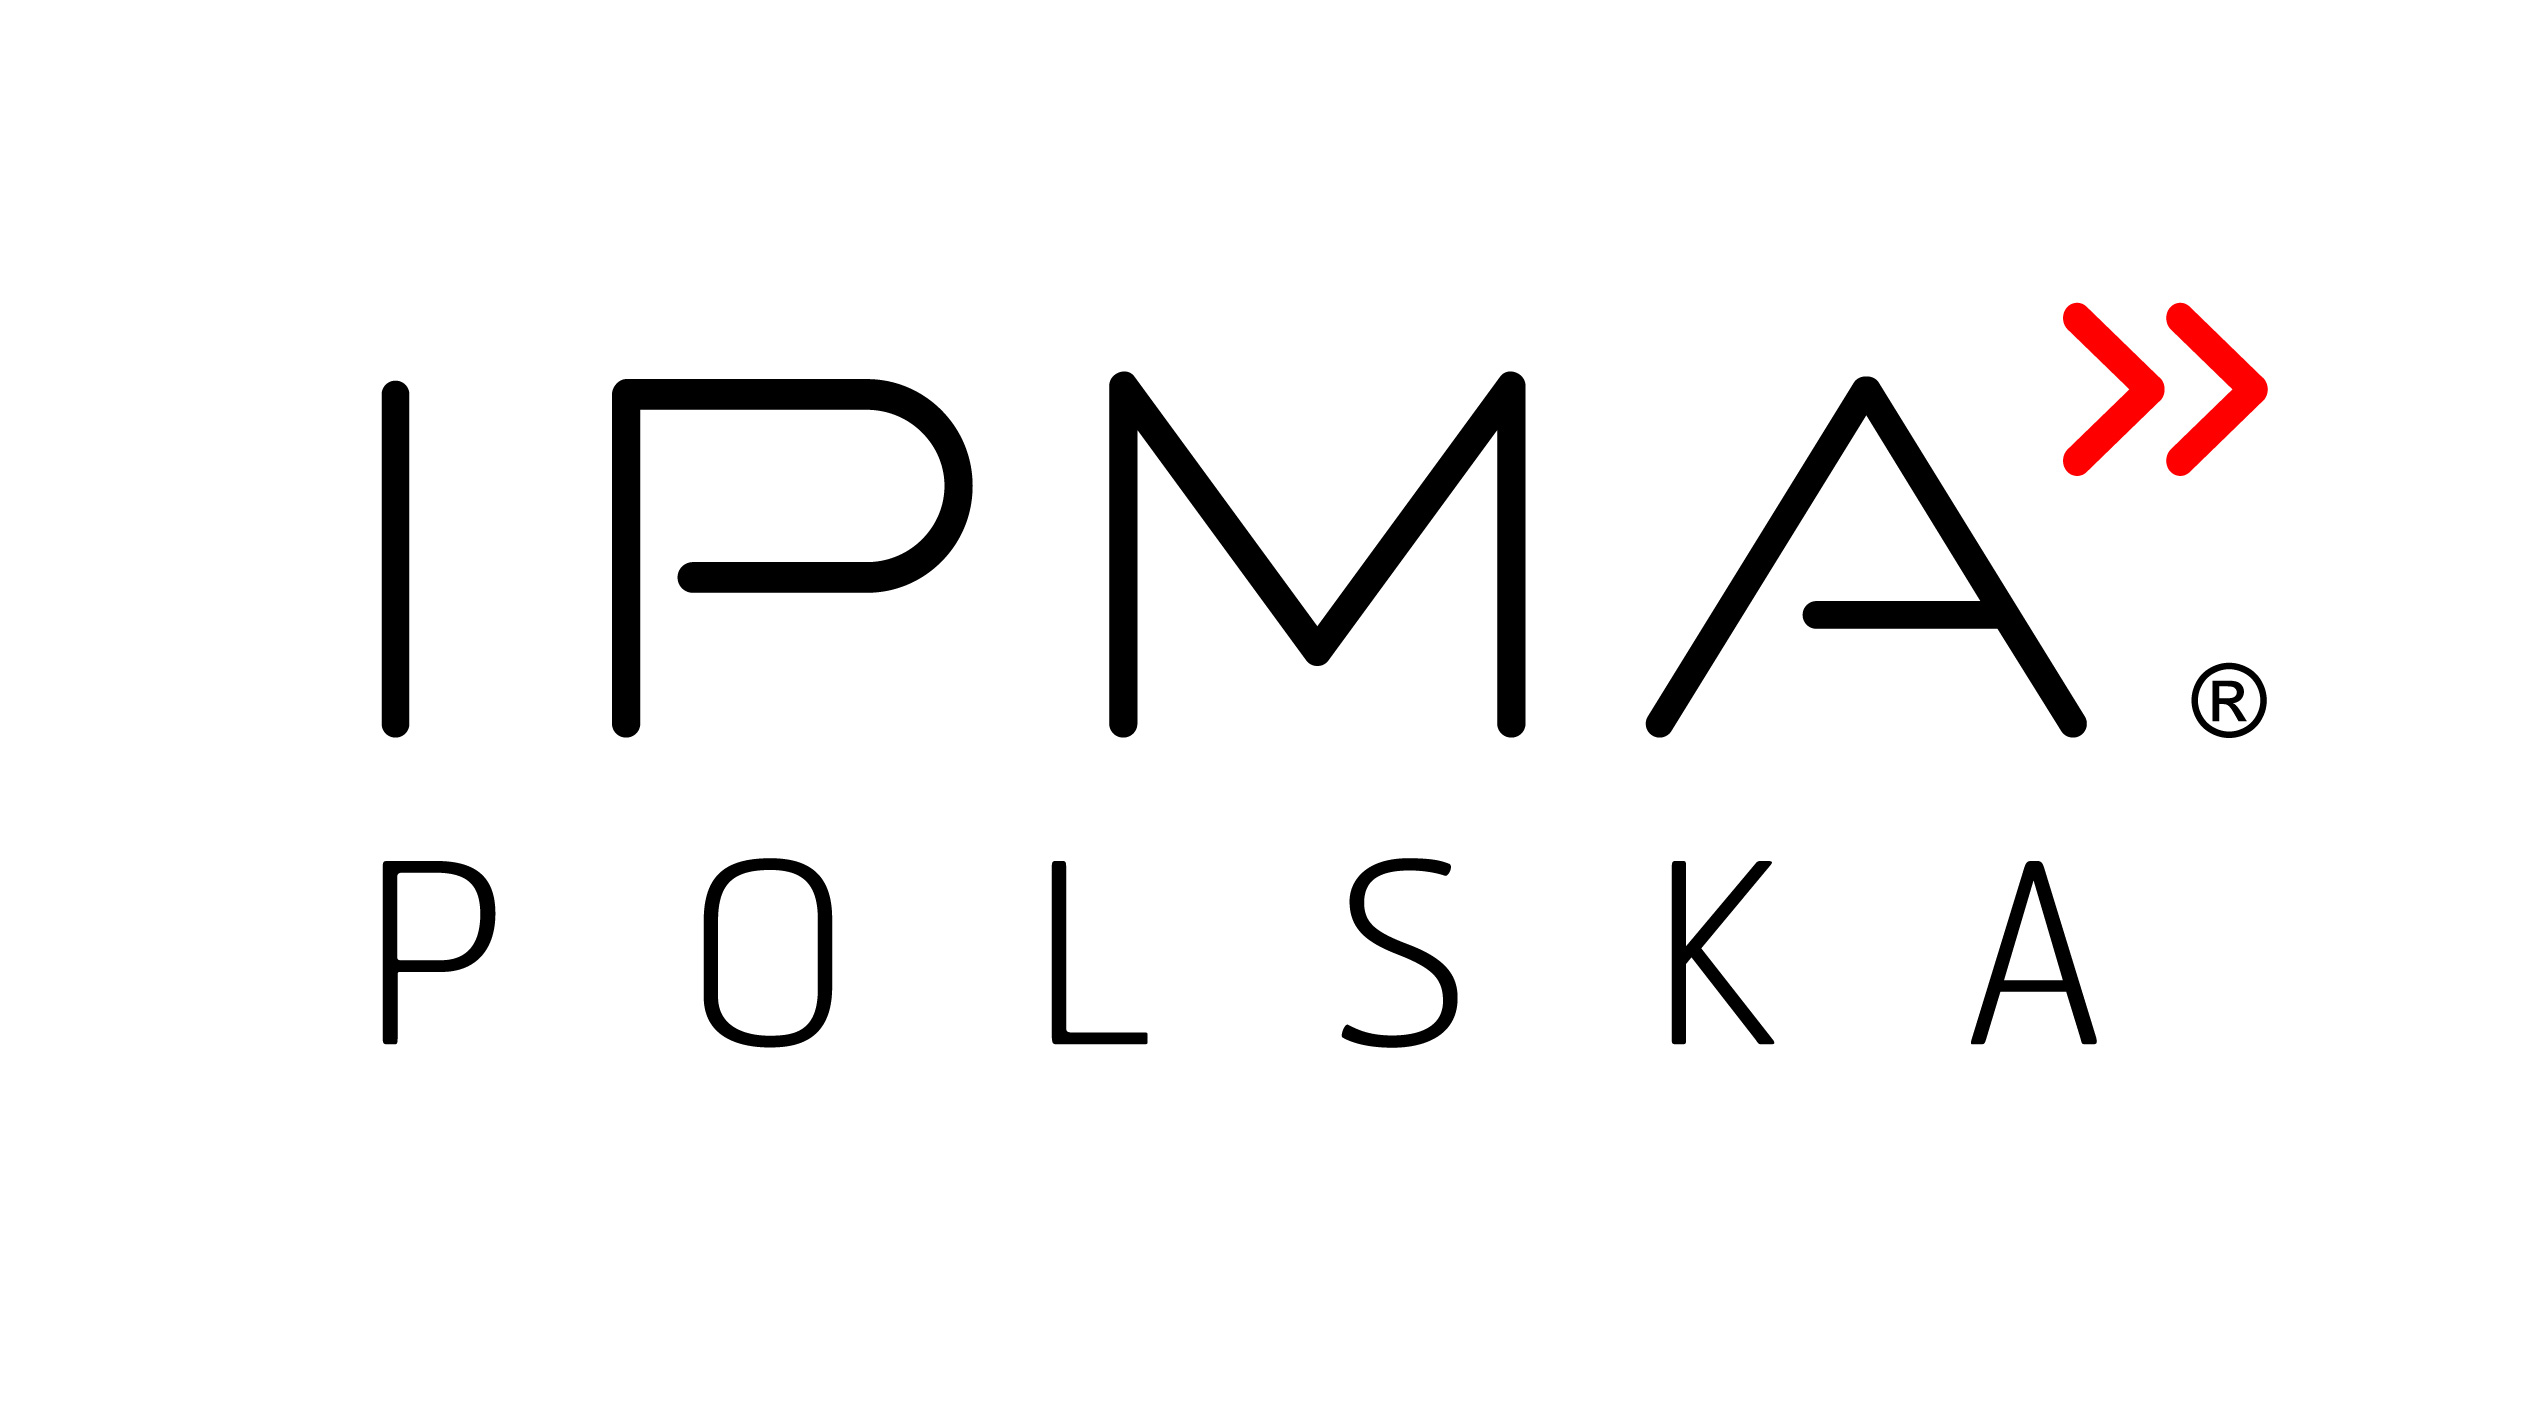 IPMA POLSKA LOGO short wersja podstawowa zastrzezona RGB